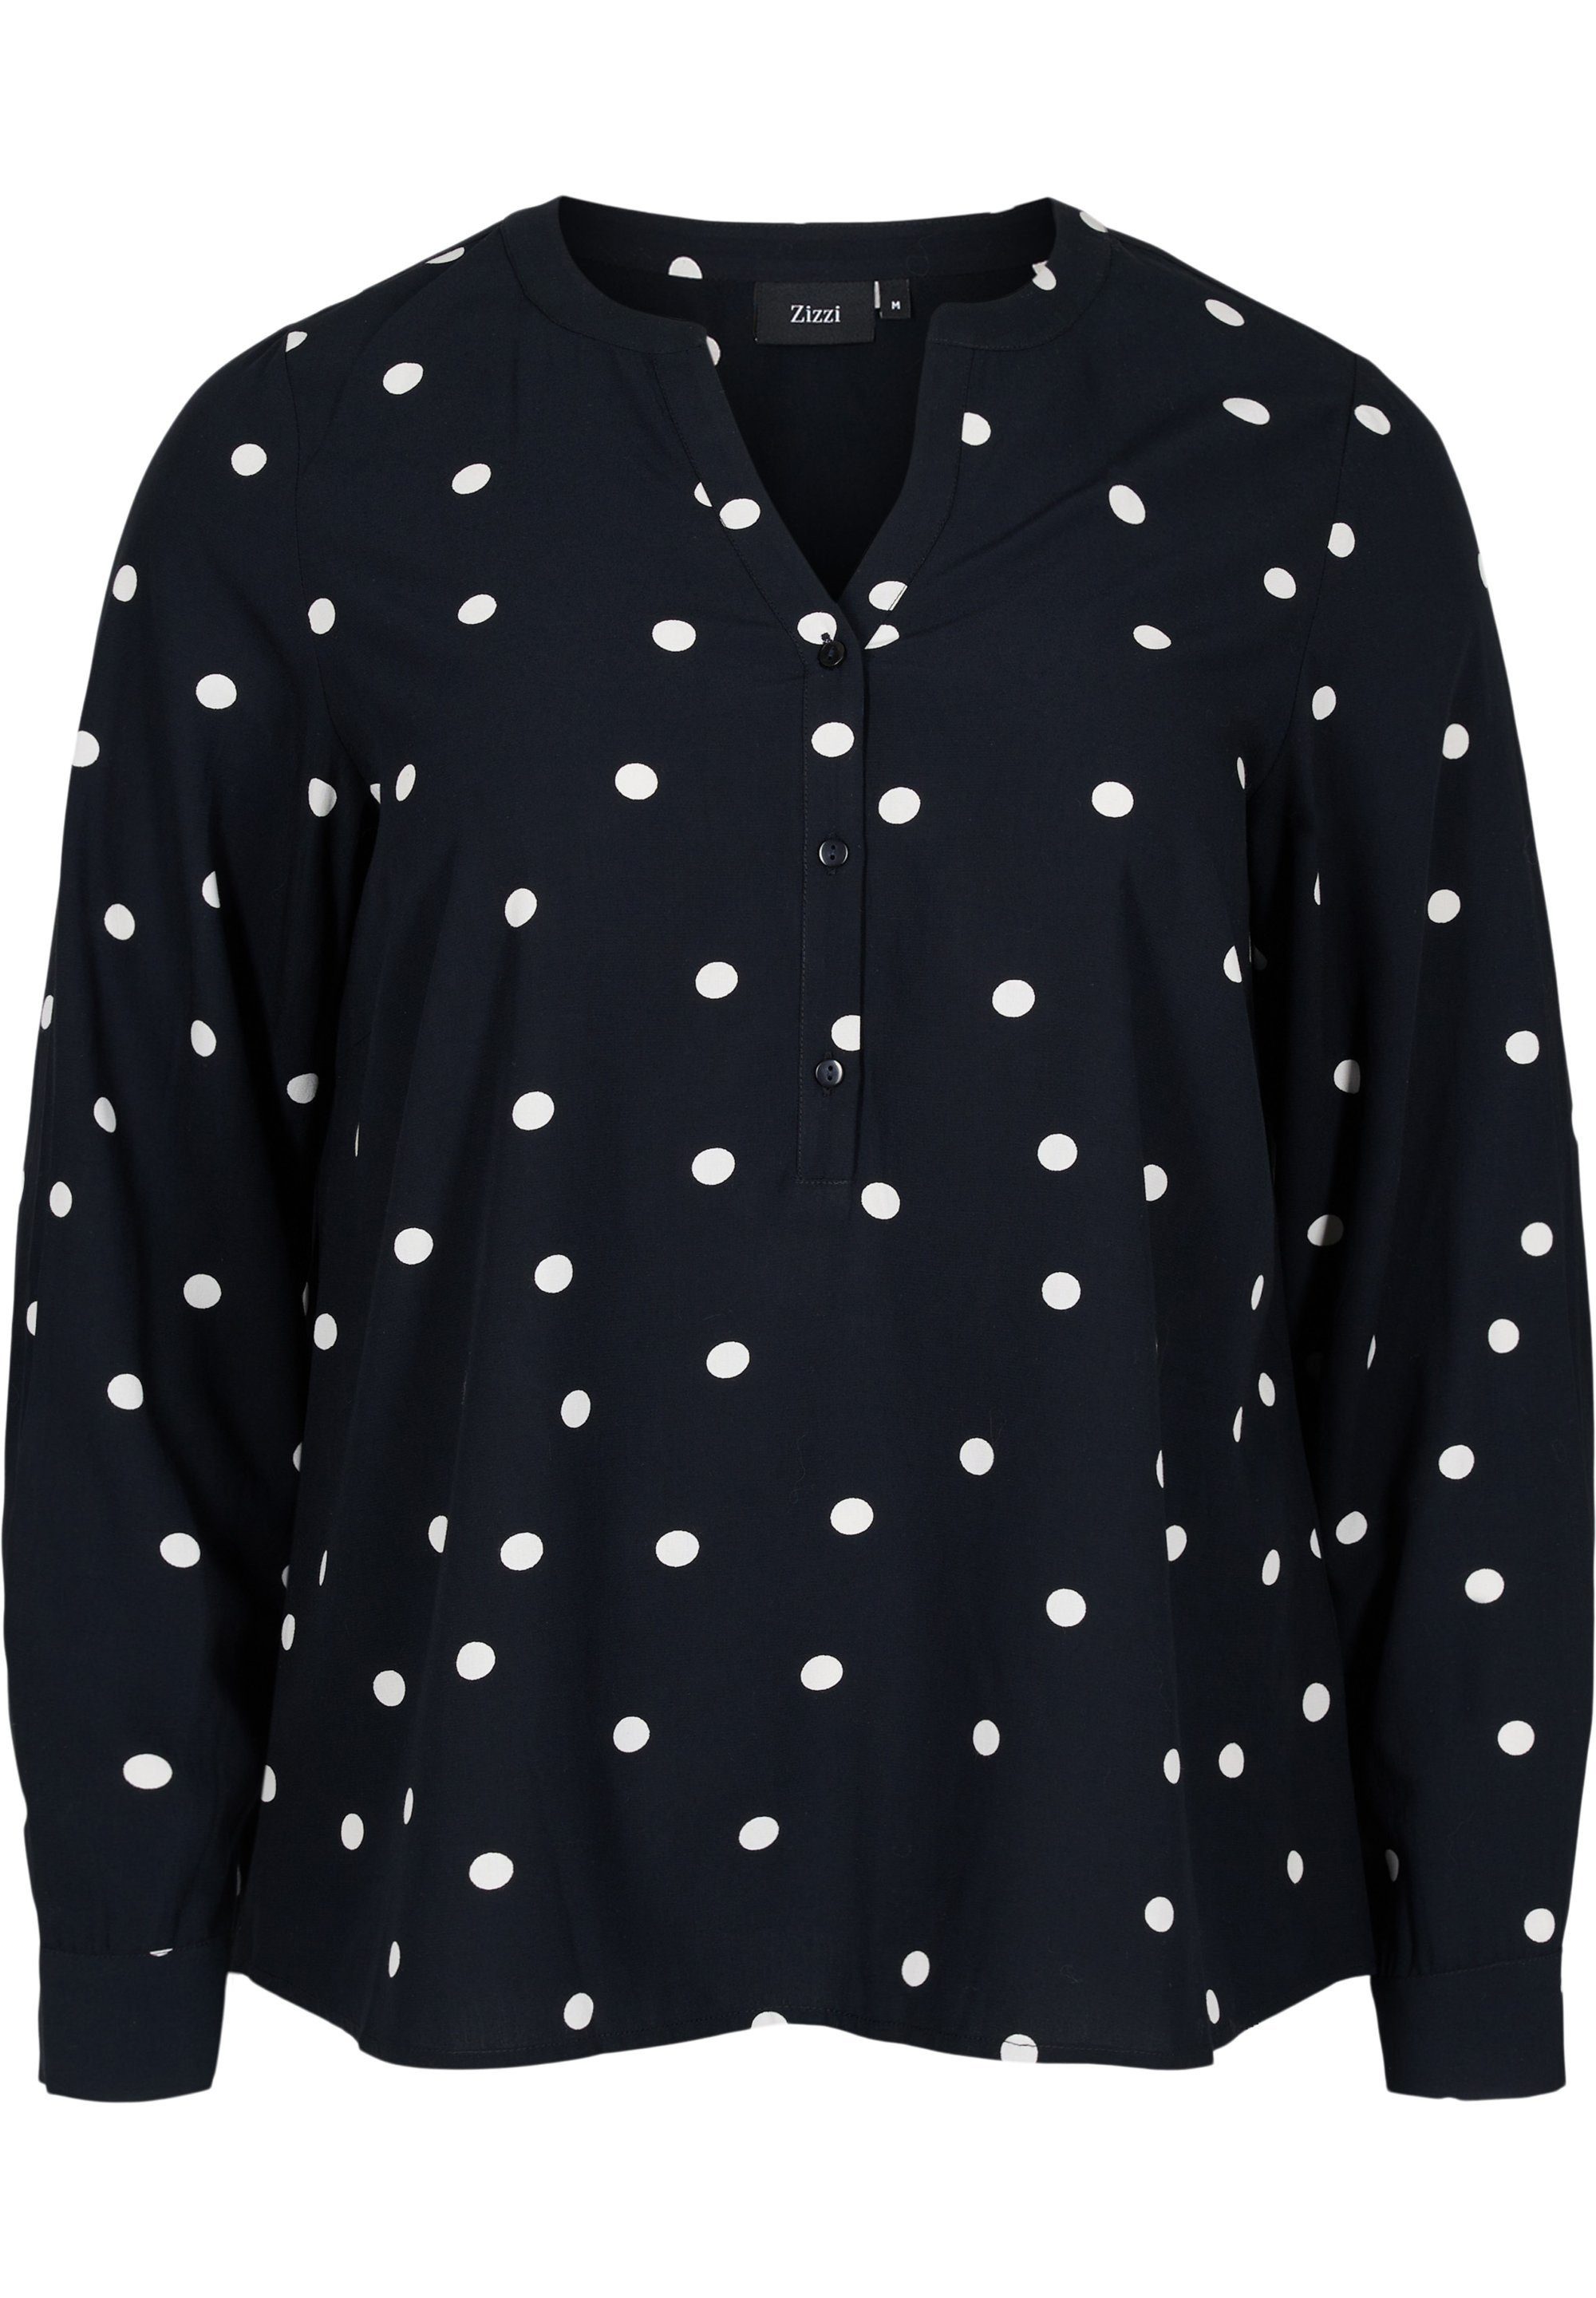 Gepunktete Blusen für Damen kaufen » Blusen mit Punkten | OTTO